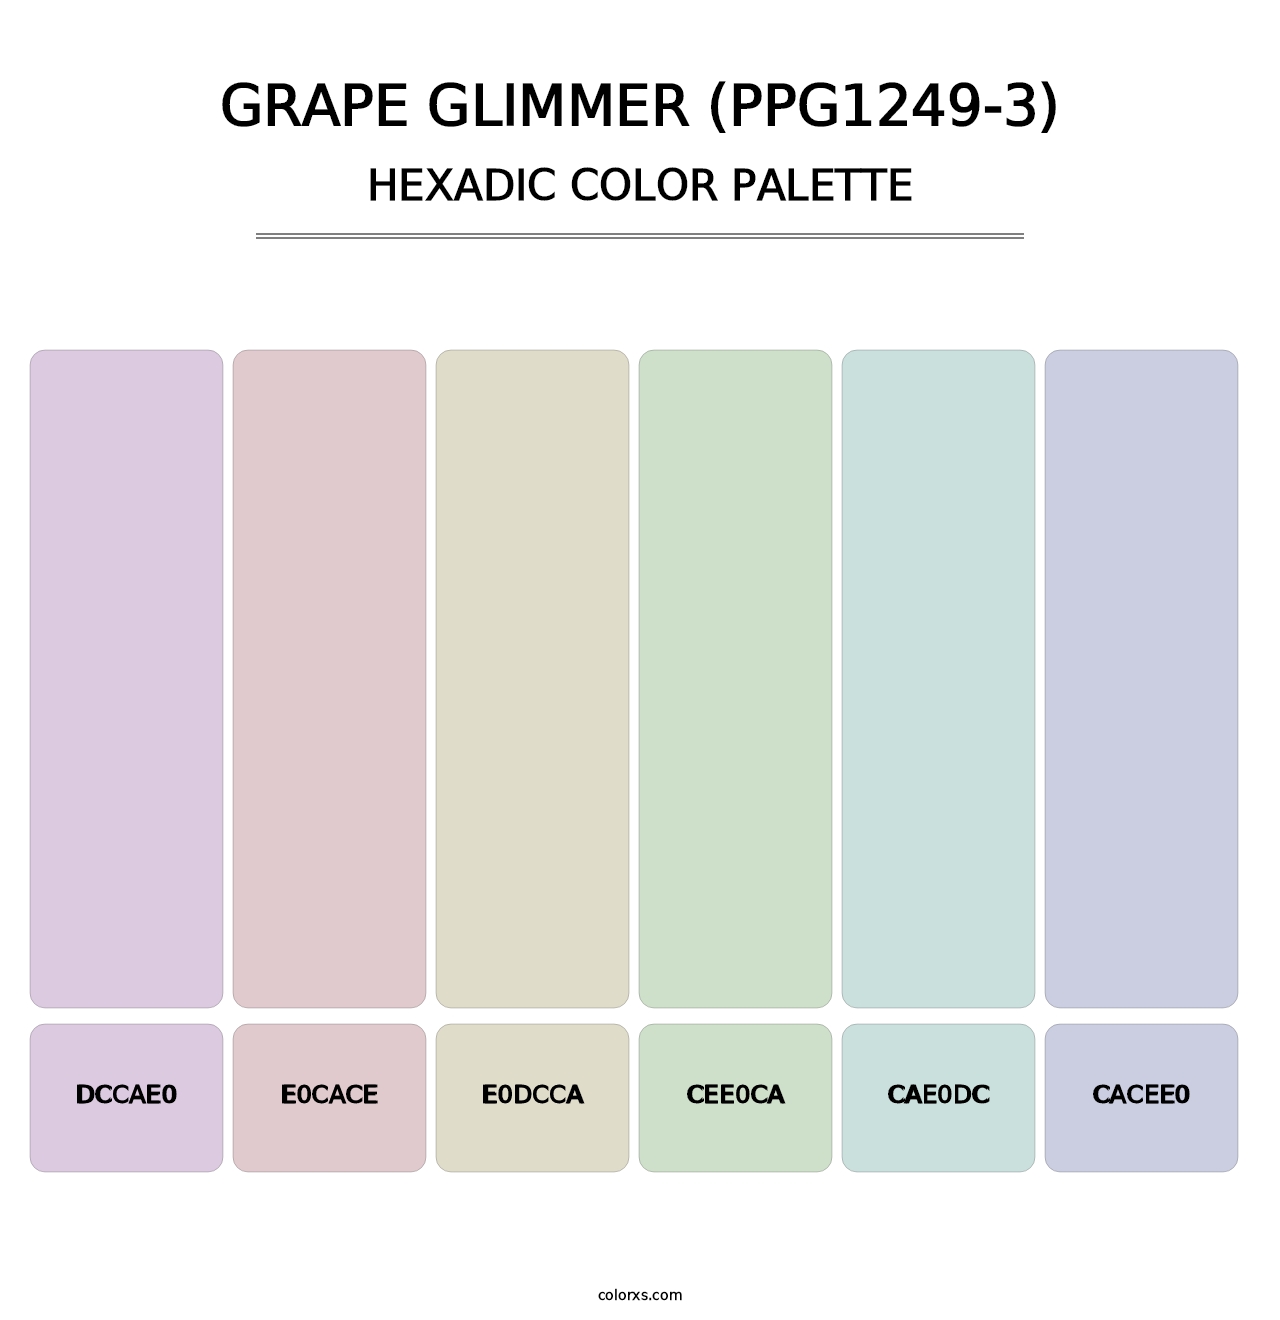 Grape Glimmer (PPG1249-3) - Hexadic Color Palette